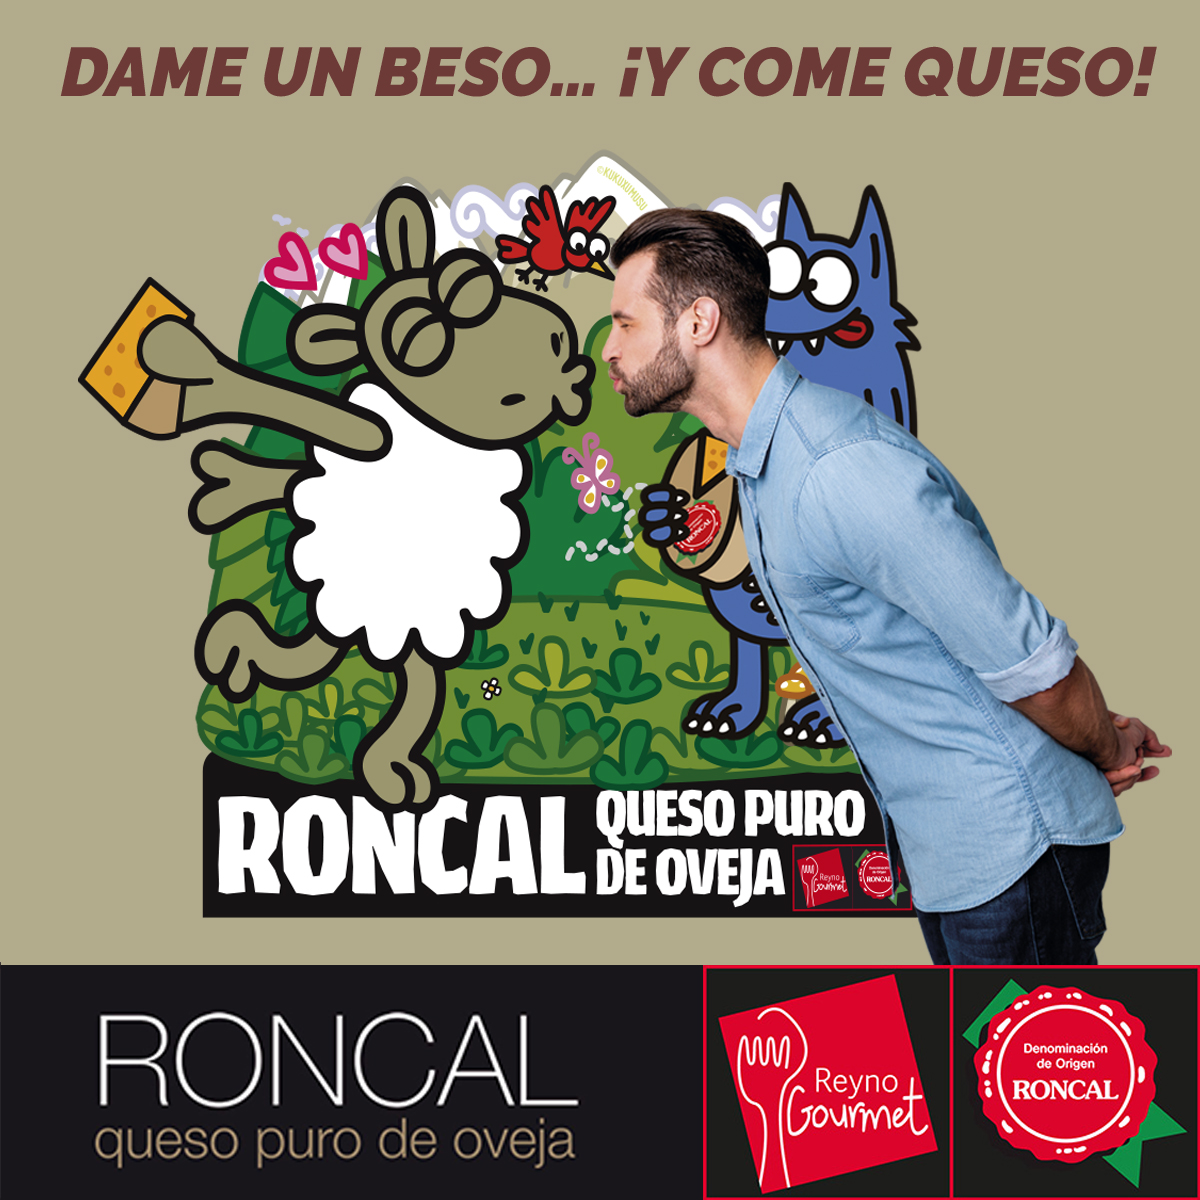 “Dame un beso y come queso”, sugerente campaña de la D.O. Roncal  